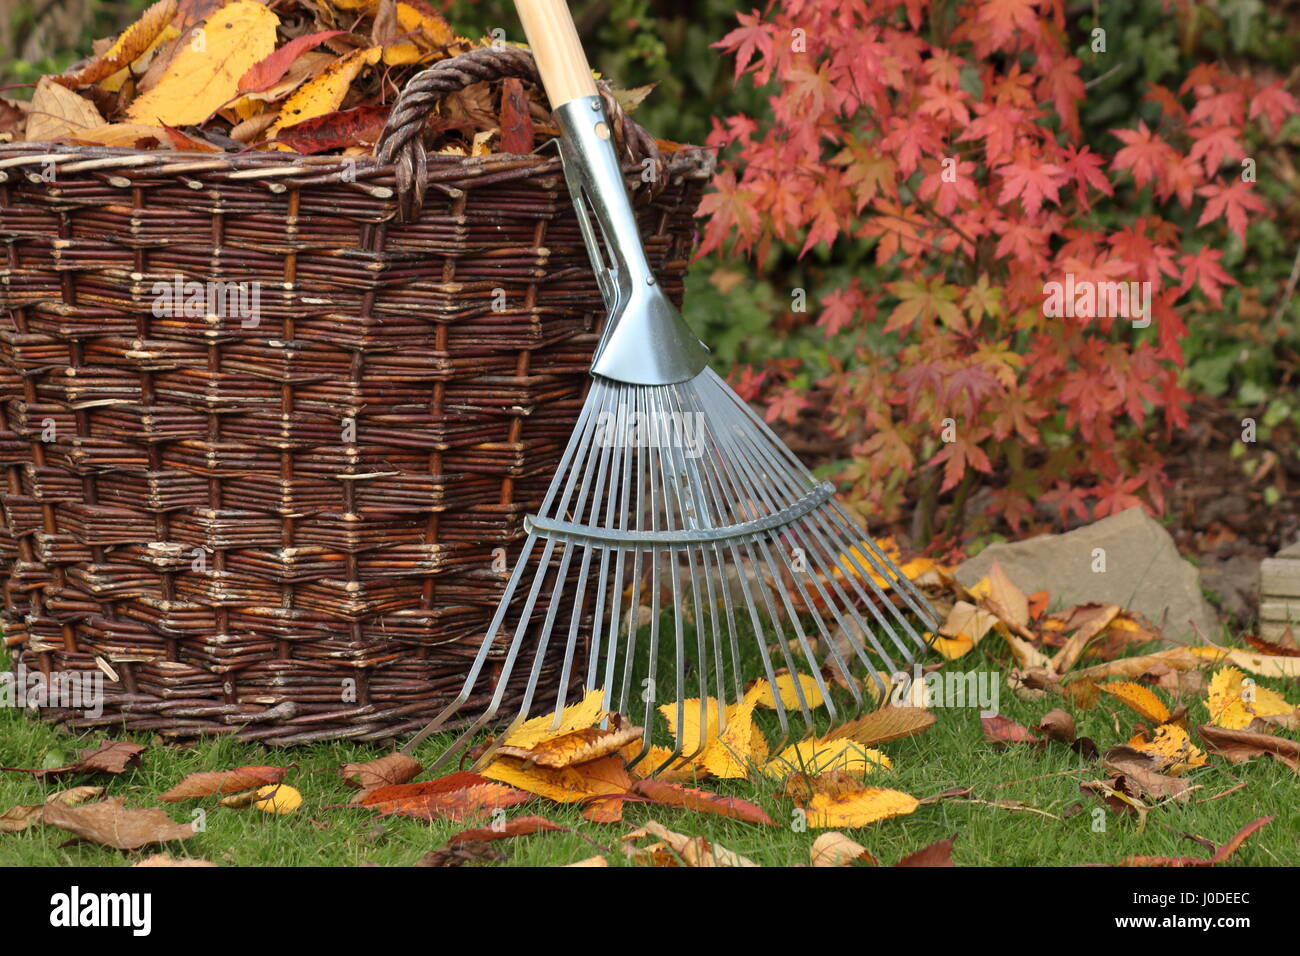 Hojas caídas despejadas de un césped de jardín en una cesta tejida en un brillante día de otoño, Reino Unido Foto de stock